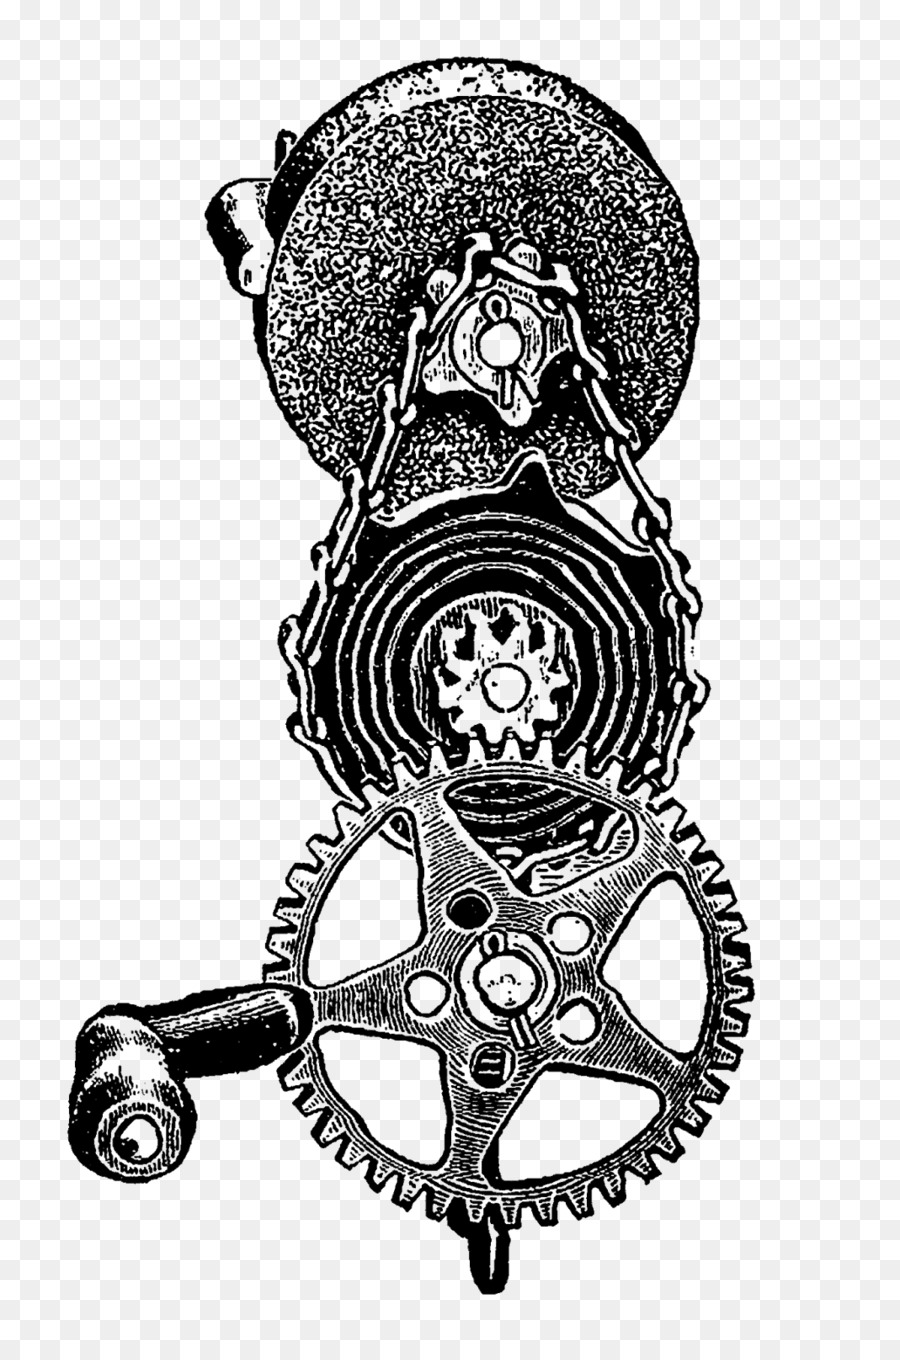 Attrezzi di Disegno Clip art - ingranaggi steampunk